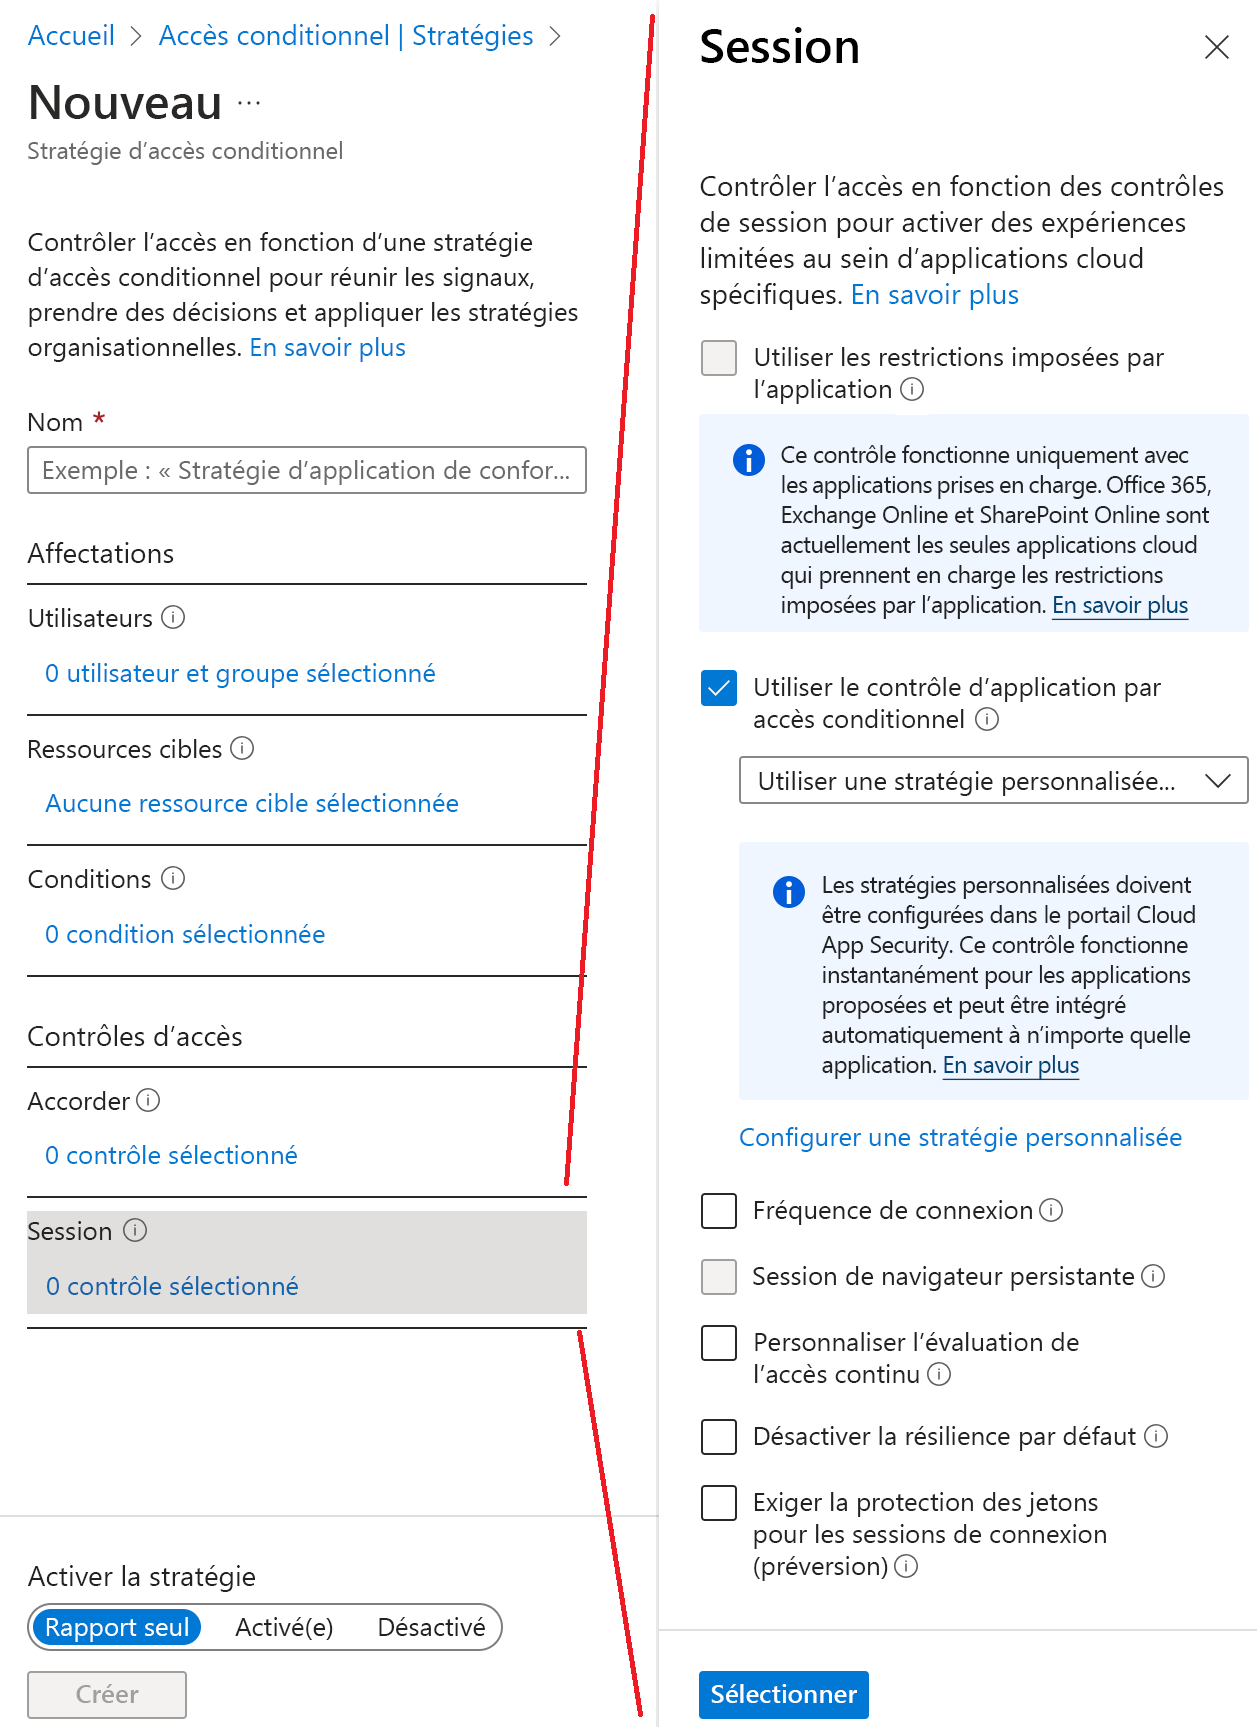 Capture d’écran de l’assistant de stratégie d’accès conditionnel Microsoft Entra avec l’option Utiliser le contrôle d'application par accès conditionnel surlignée.